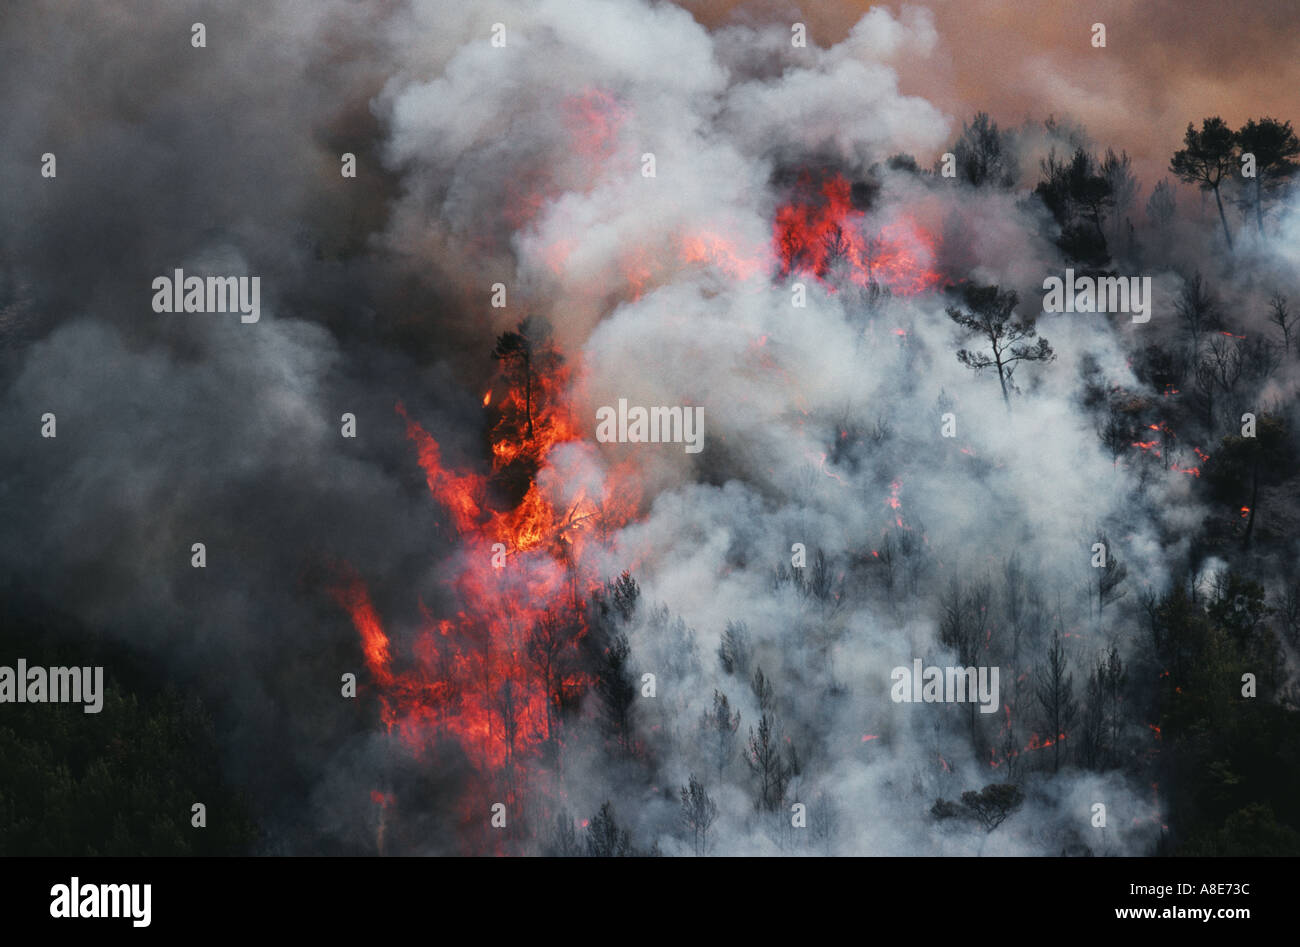 Vue aérienne d'un incendie de forêt, feu de forêt des flammes et fumée, Bouches-du-Rhône, Provence, France, Europe, Banque D'Images